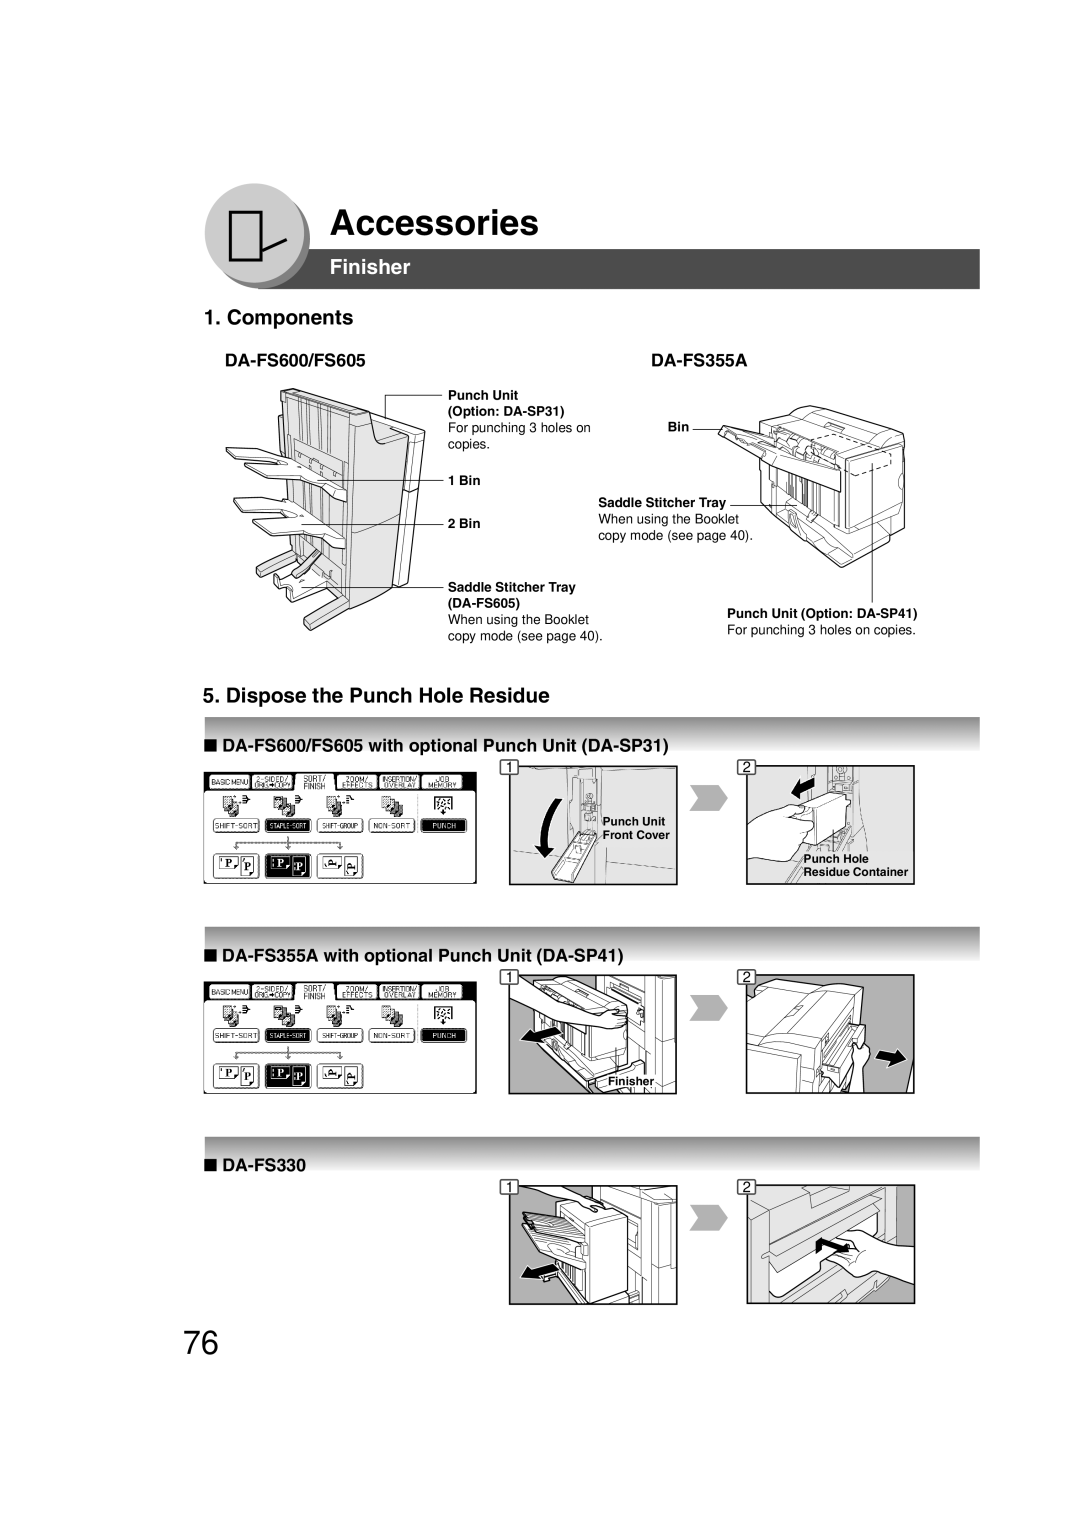 Panasonic 4520 Finisher, Components, Dispose the Punch Hole Residue, DA-FS600/FS605, DA-FS355A, DA-FS330, Accessories 